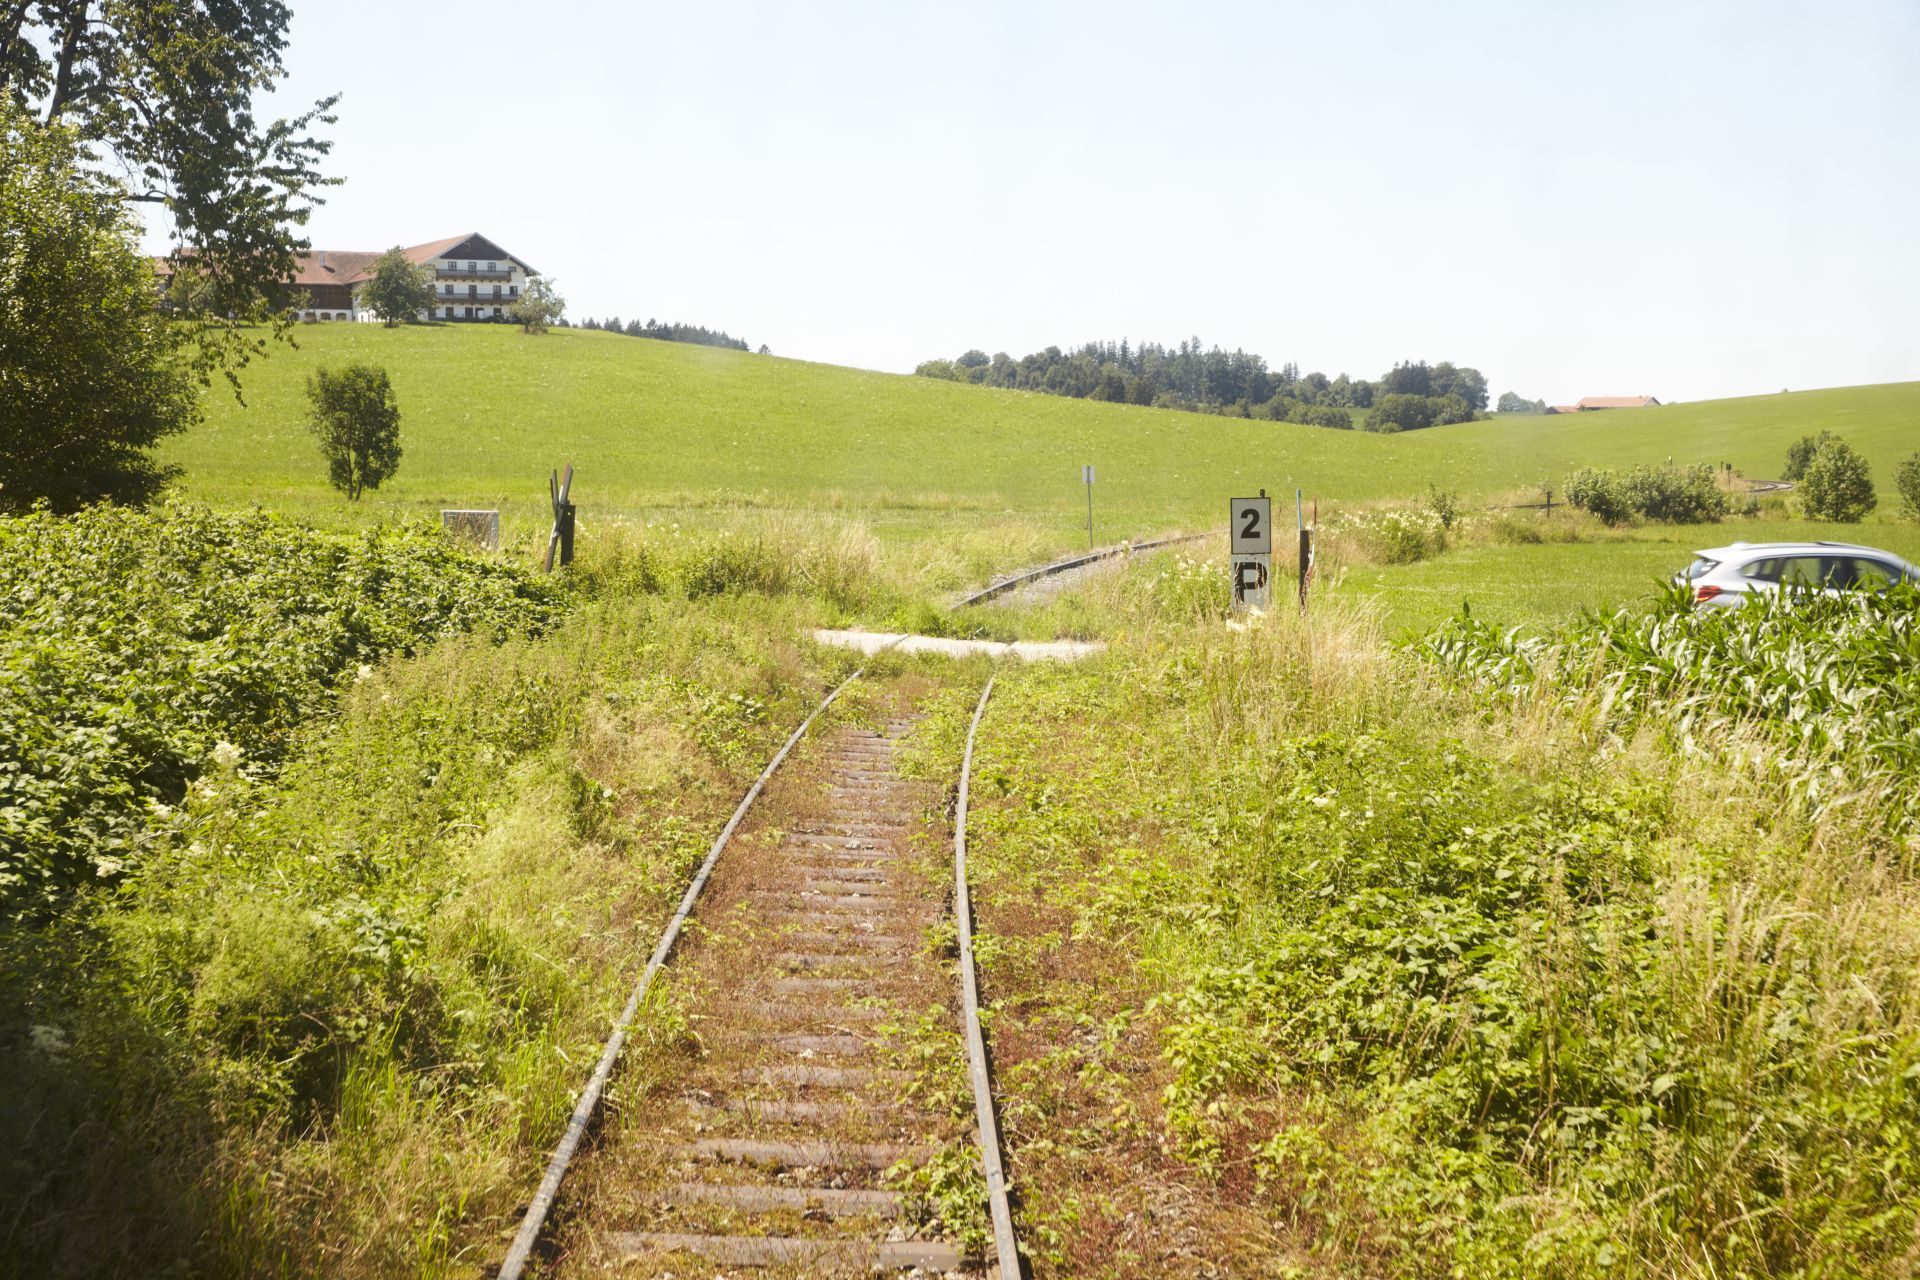 Leicht verwilderndes Bahngleis in grüner Landschaft